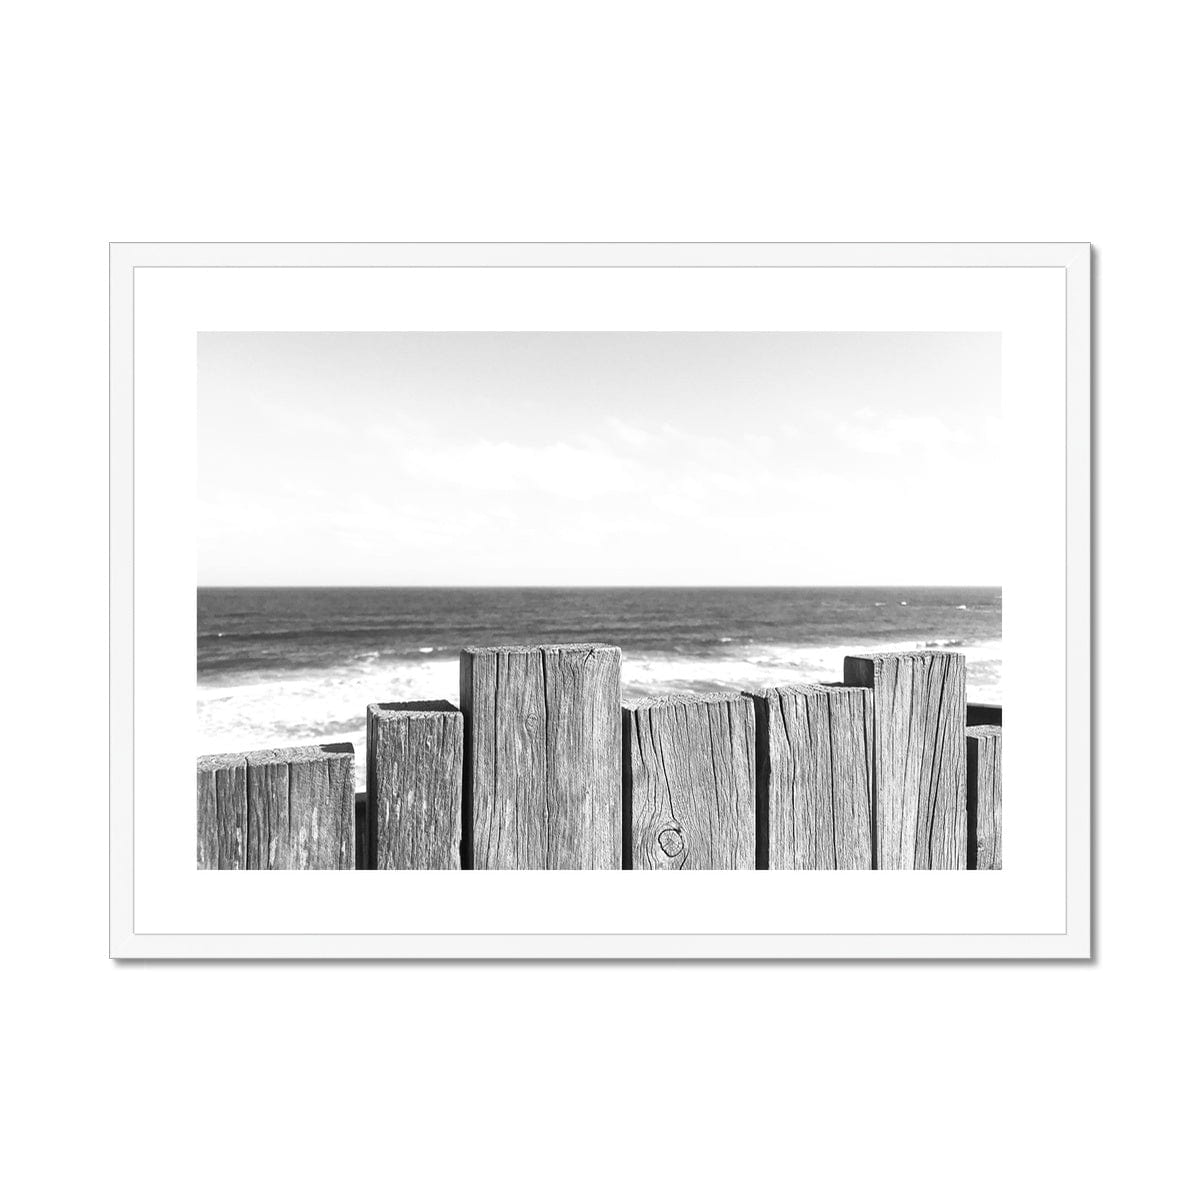 Adam Davies Framed 28"x20" / White Frame Black & White Beach Fence Framed & Mounted Print